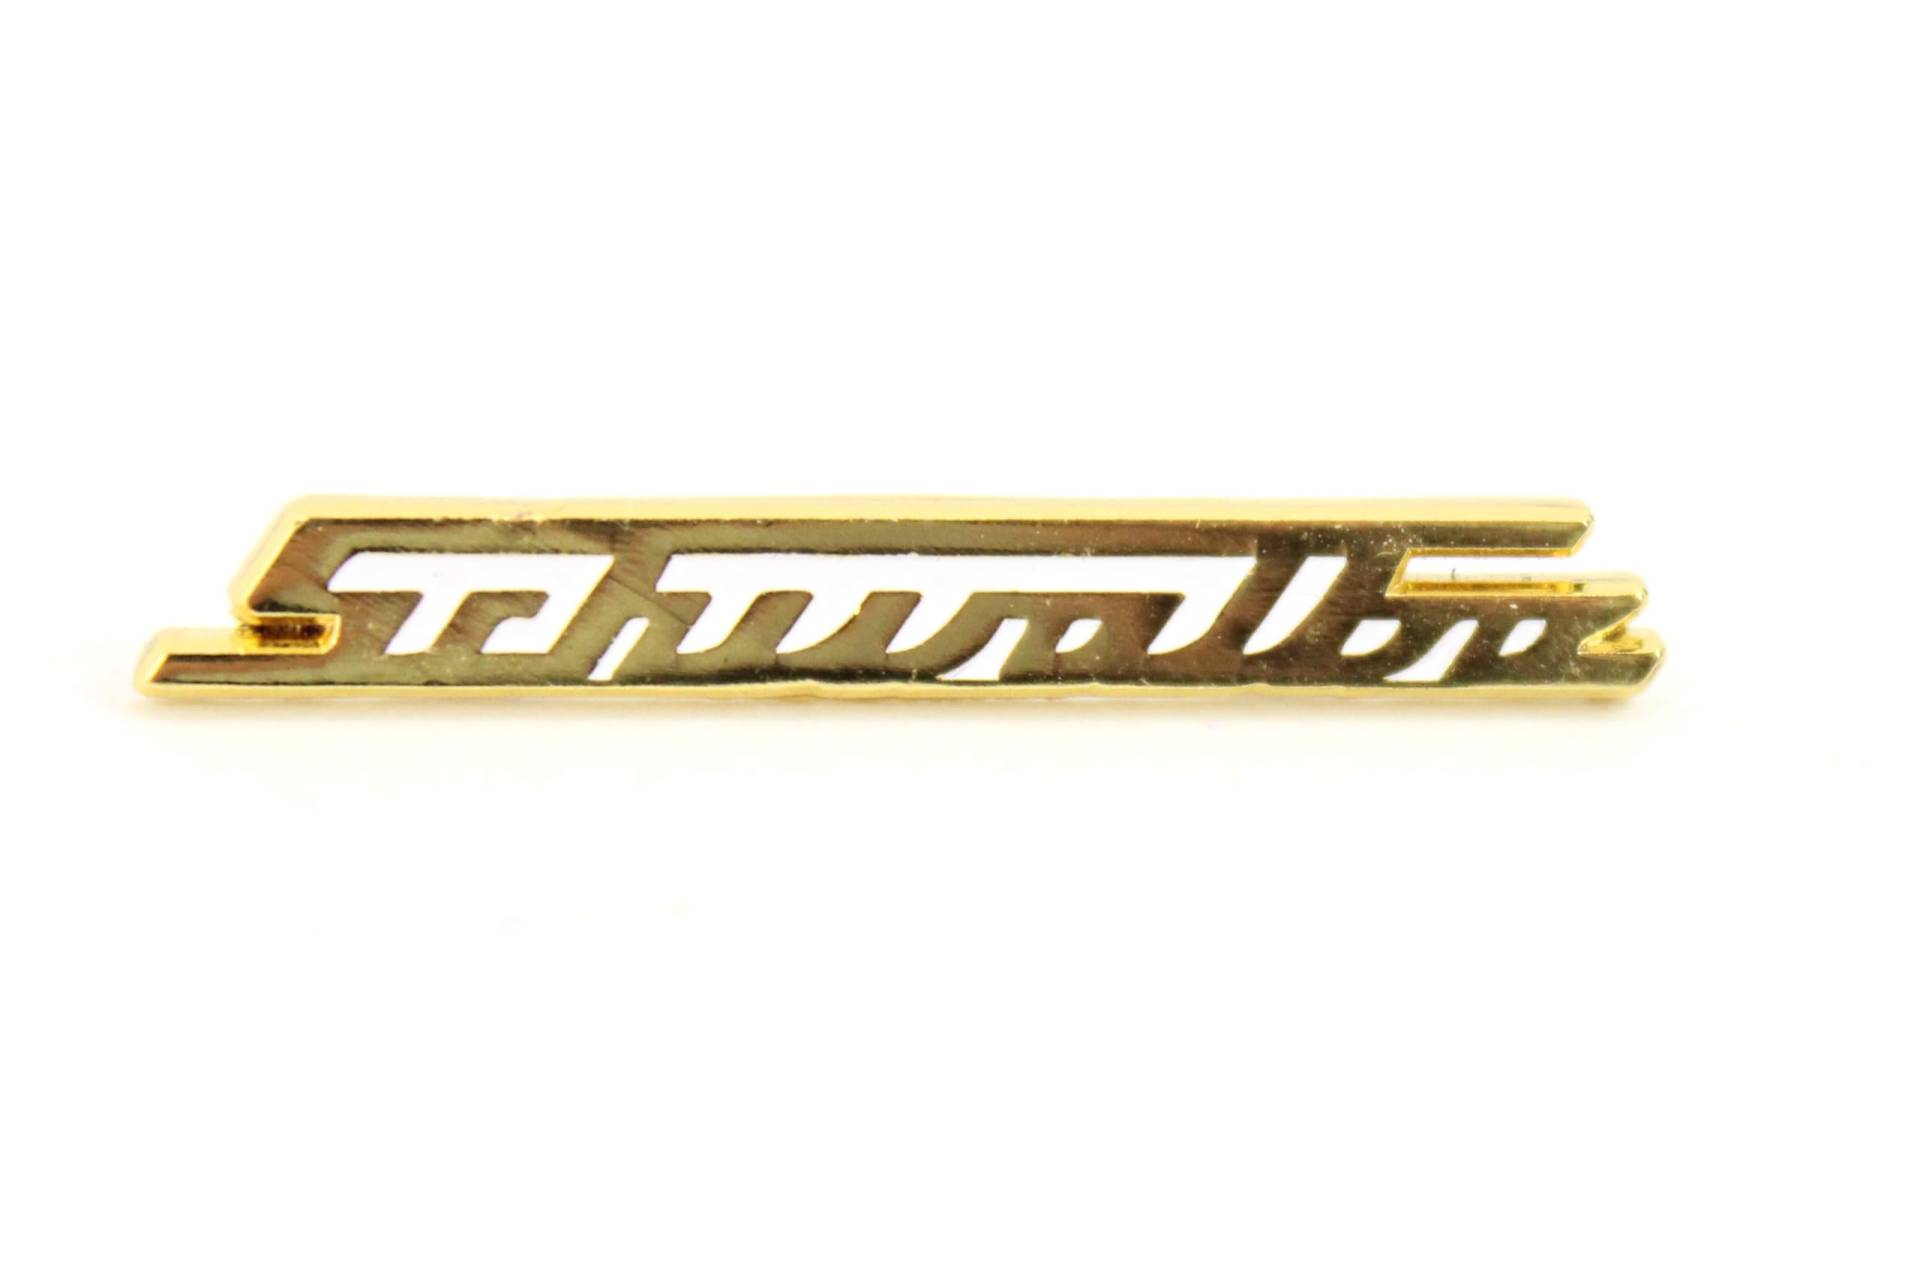 PIN""""SCHWALBE"""", Gold - Design gleicht Schriftzug v. Beinblech, bei KR51 - sehr filigrane Arbeit, ca. 38mm breit von MZA